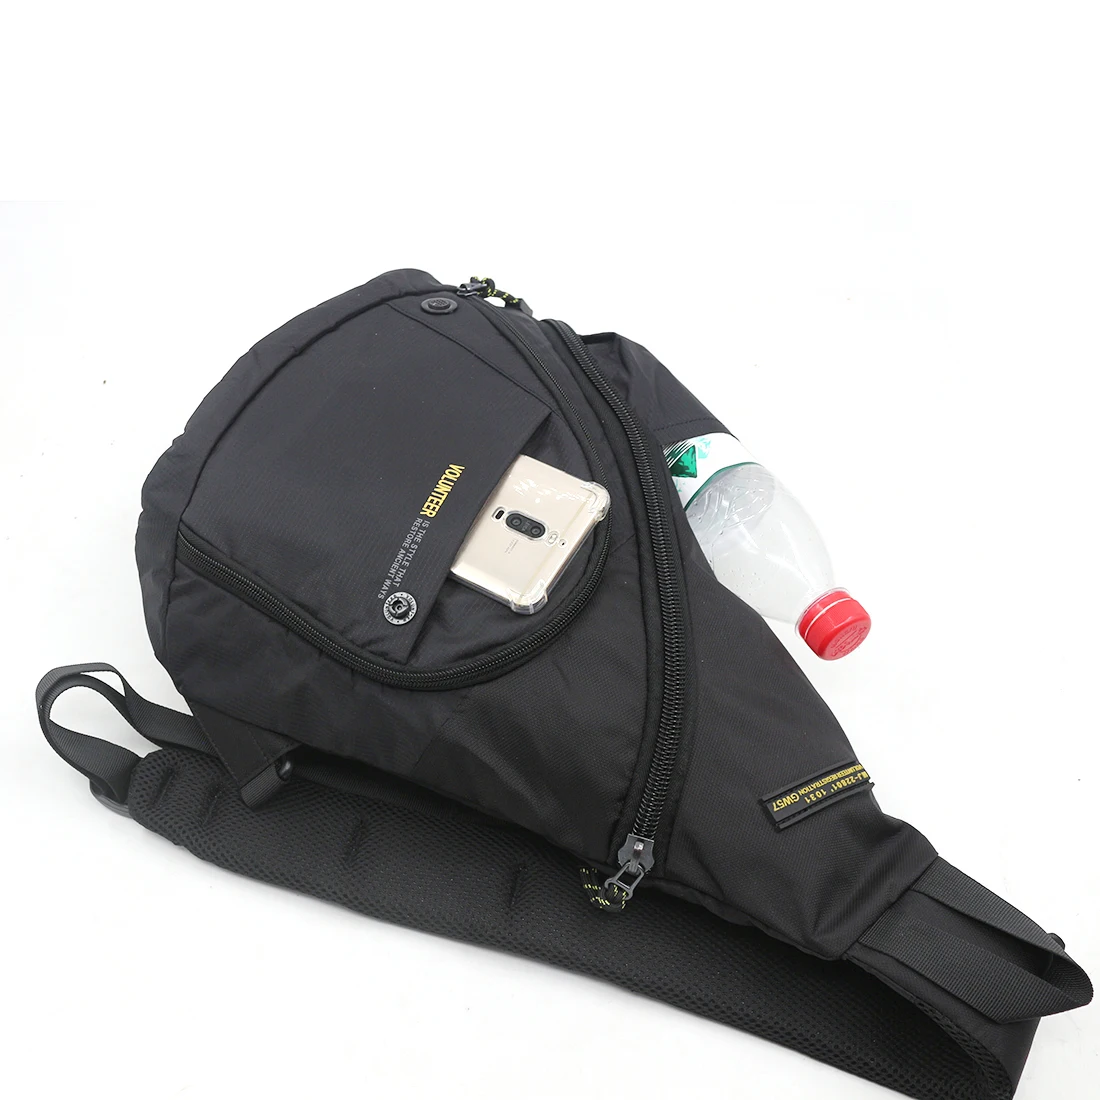 Высокое качество, один рюкзак, рюкзак для путешествий, модный рюкзак для бутылки воды/чайника, сумка через плечо, нагрудные сумки, новинка